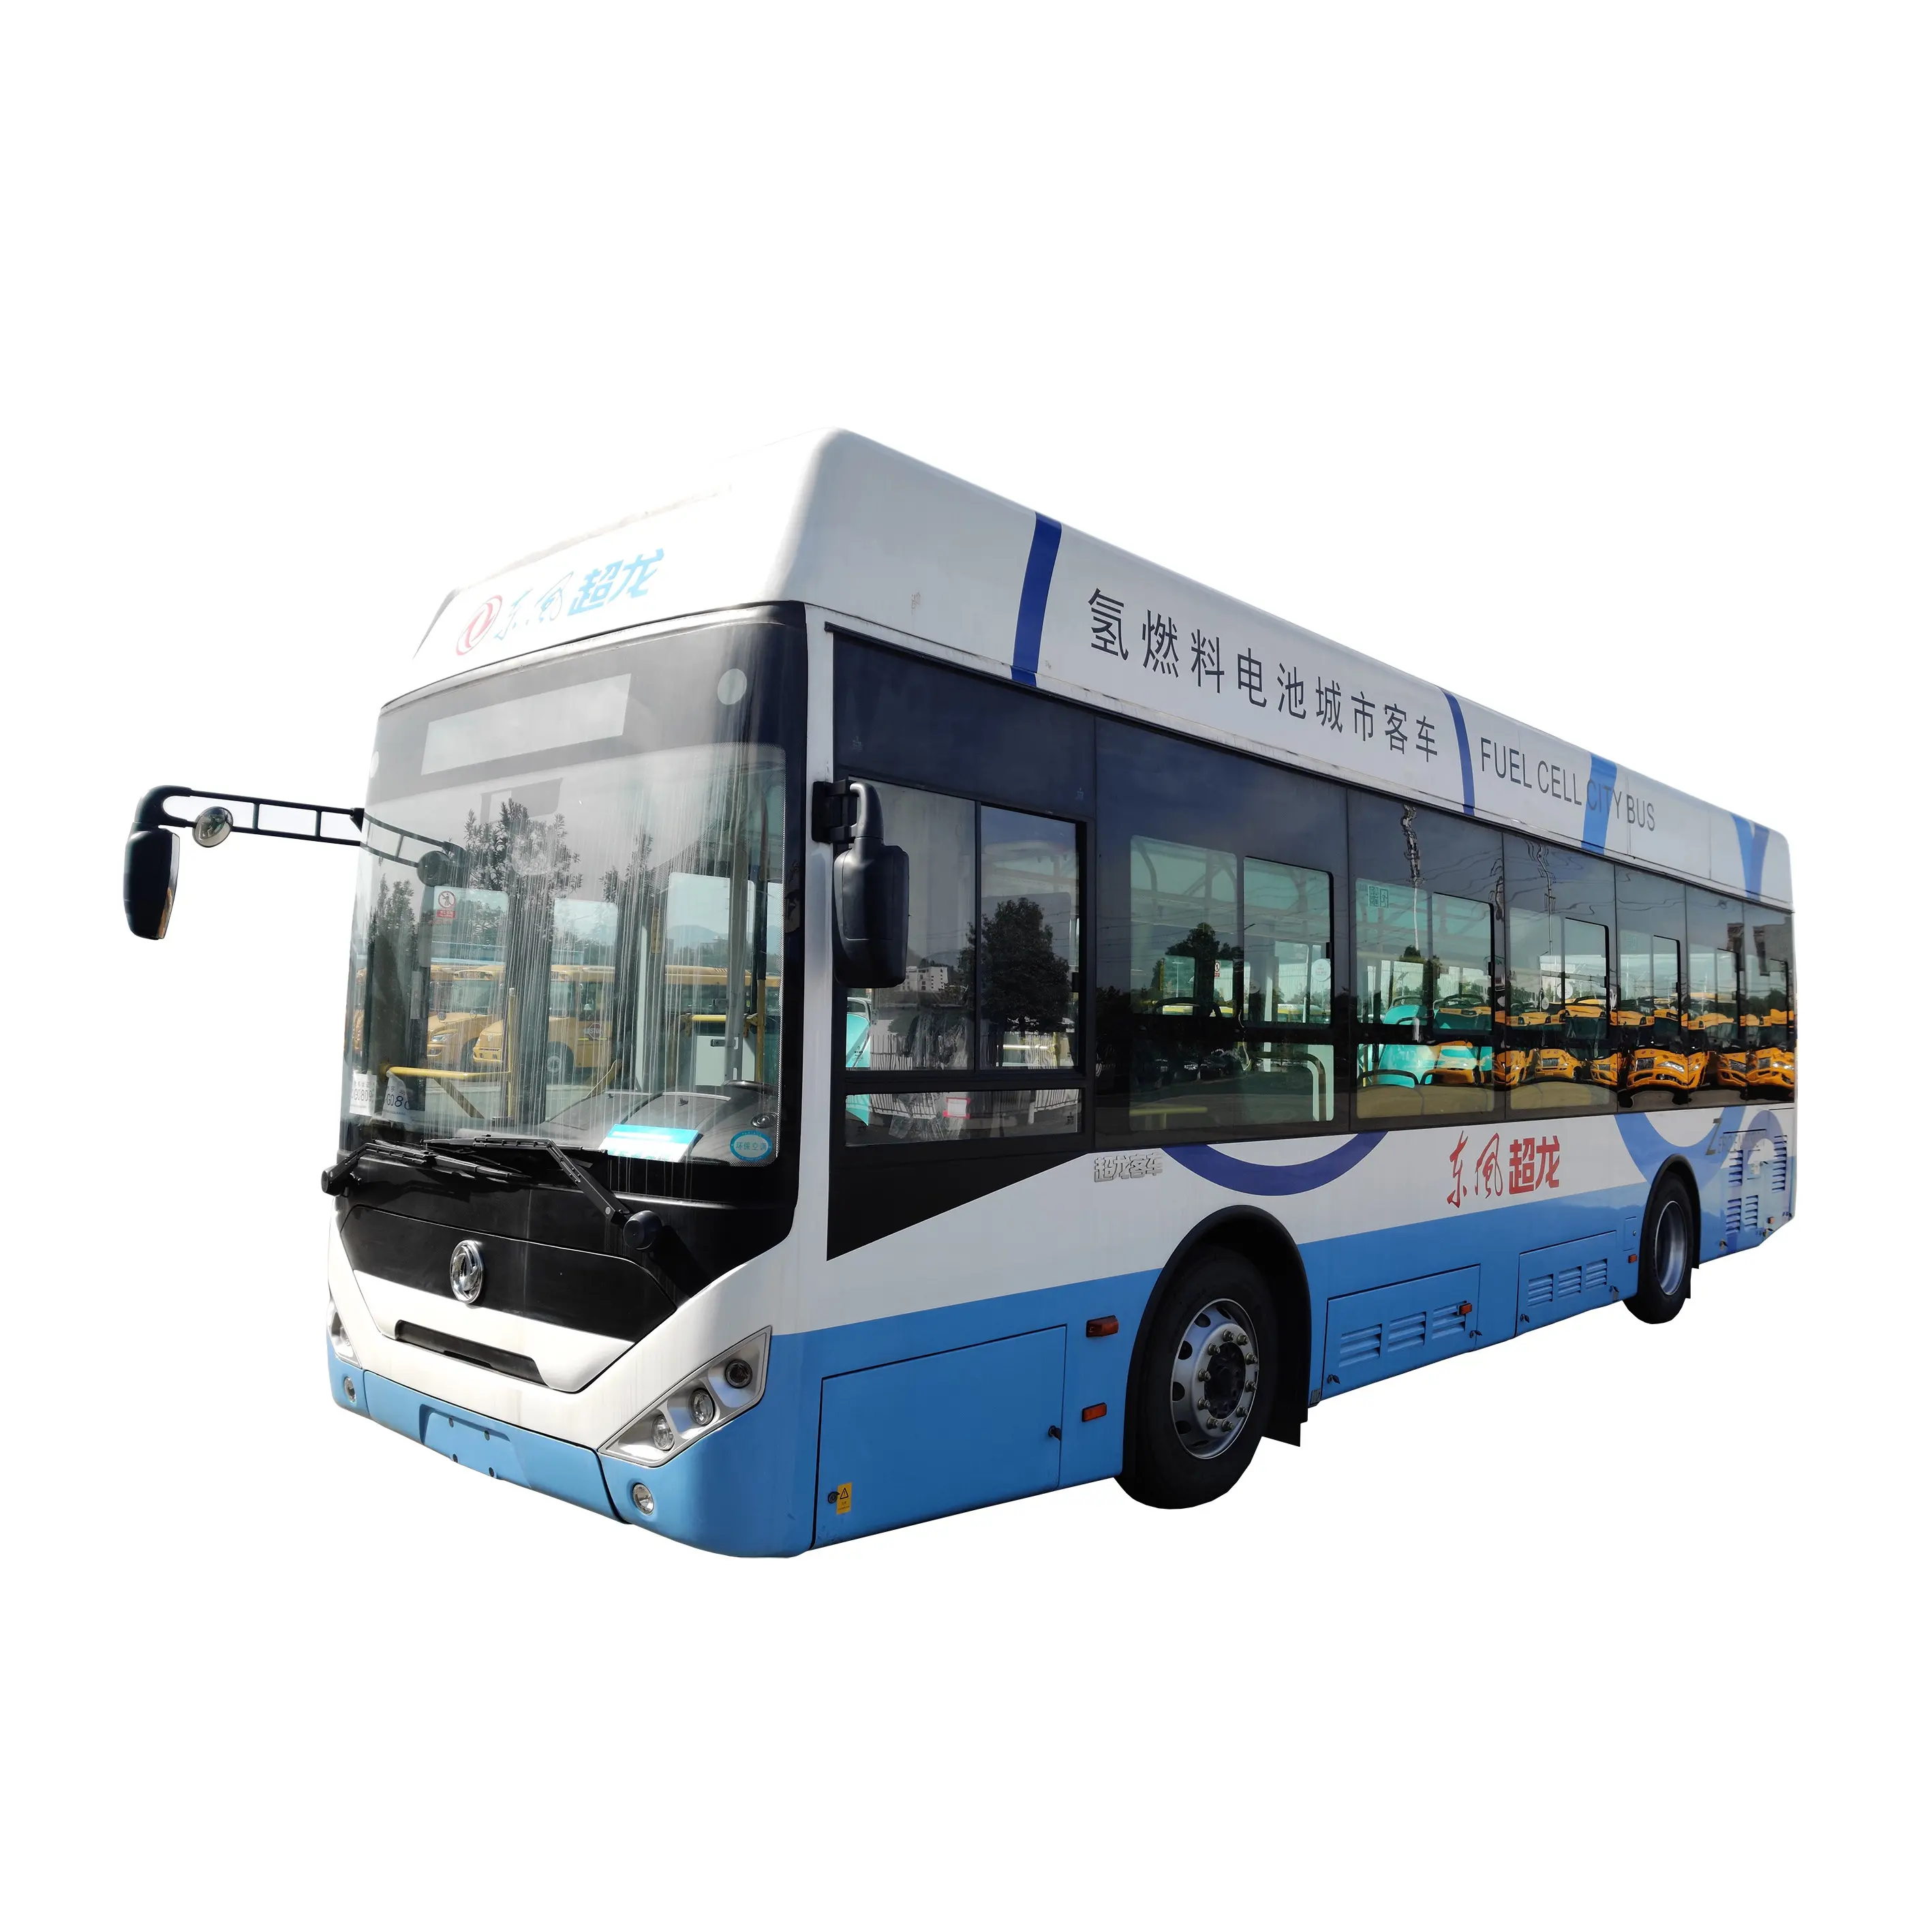 Bus de ville hybride vert hydrogène électrique zéro émission Euro 6 navette de transport public Bus de ville